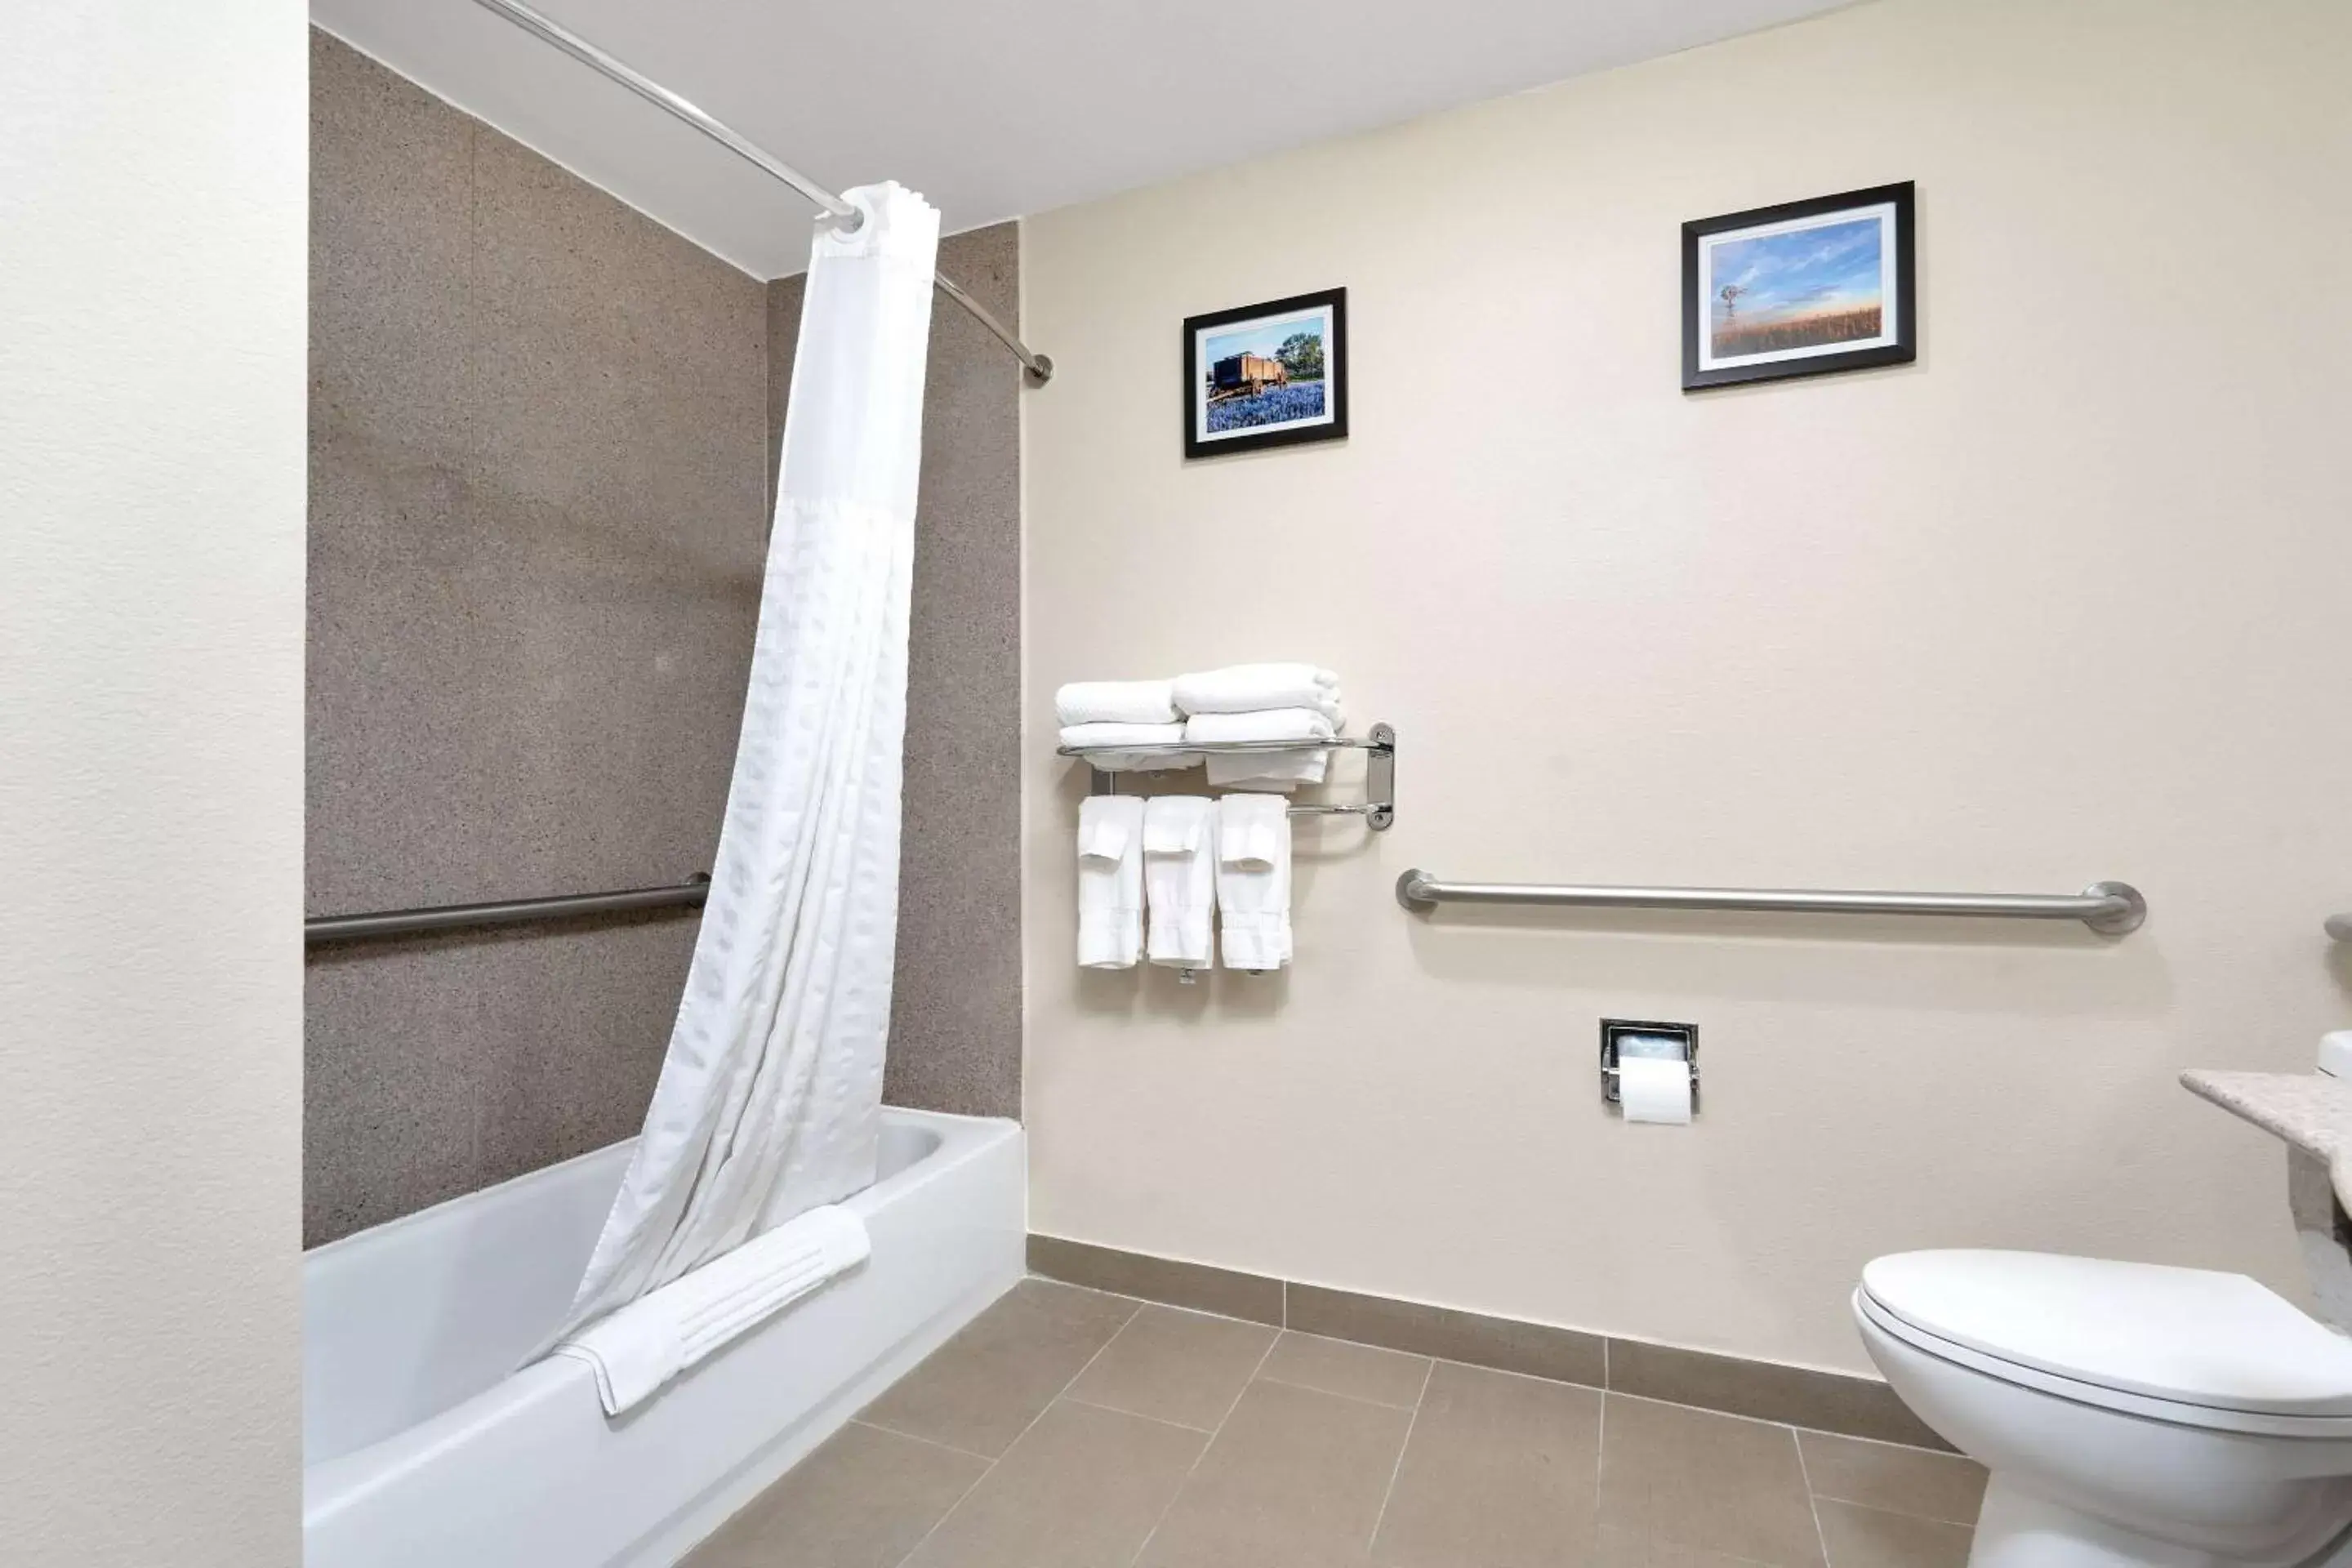 Bedroom, Bathroom in Comfort Suites University Abilene